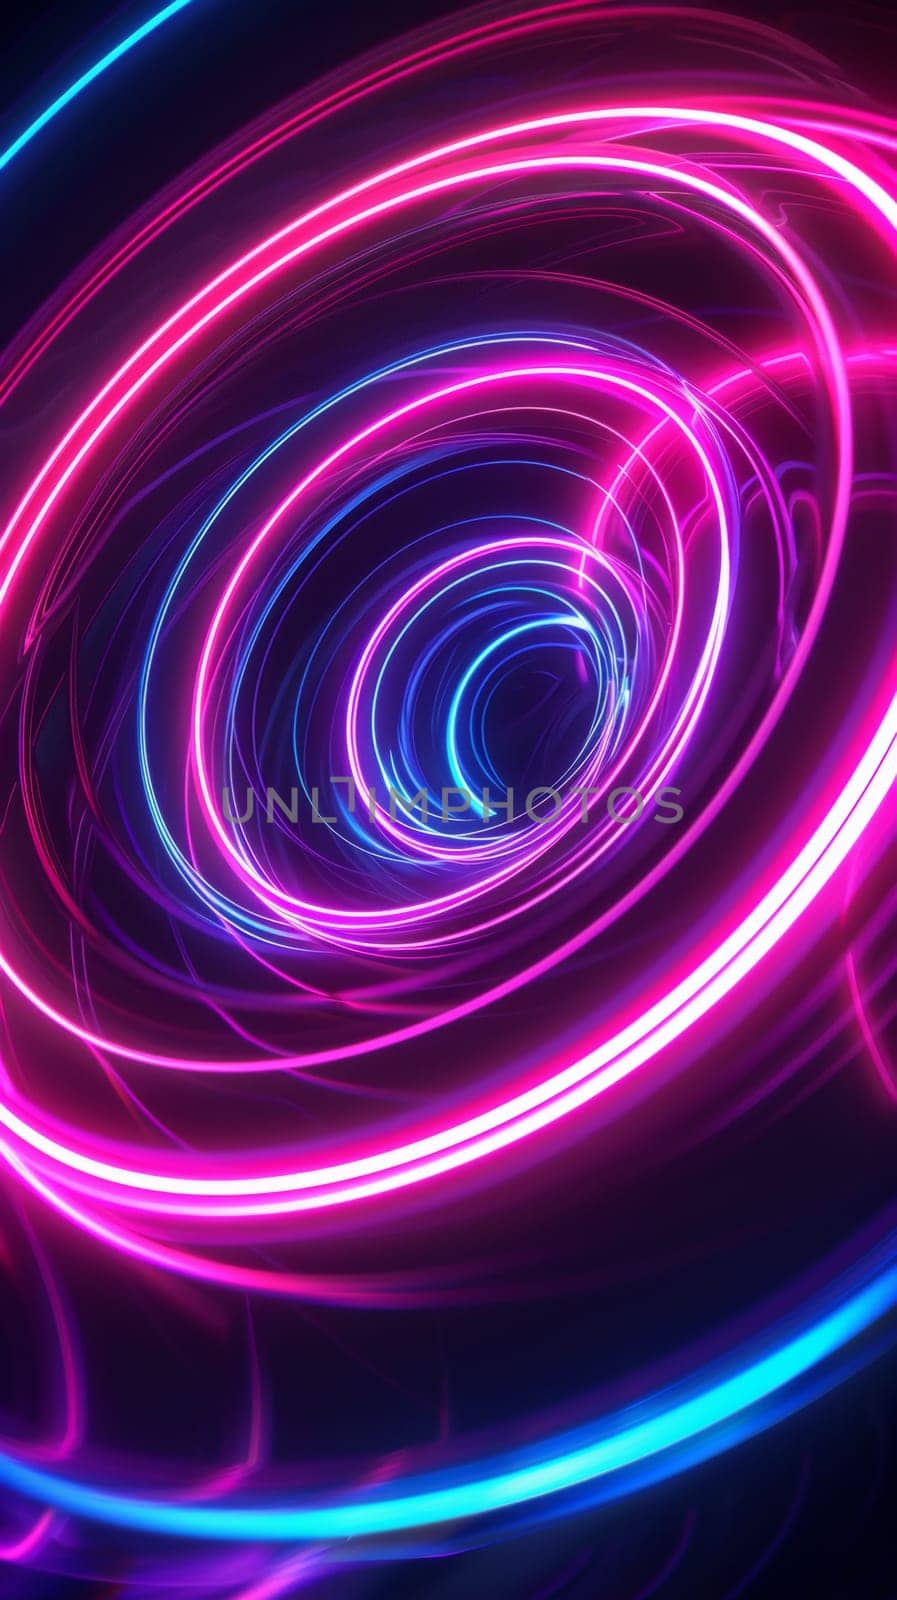 A spiral of neon lights in a dark background